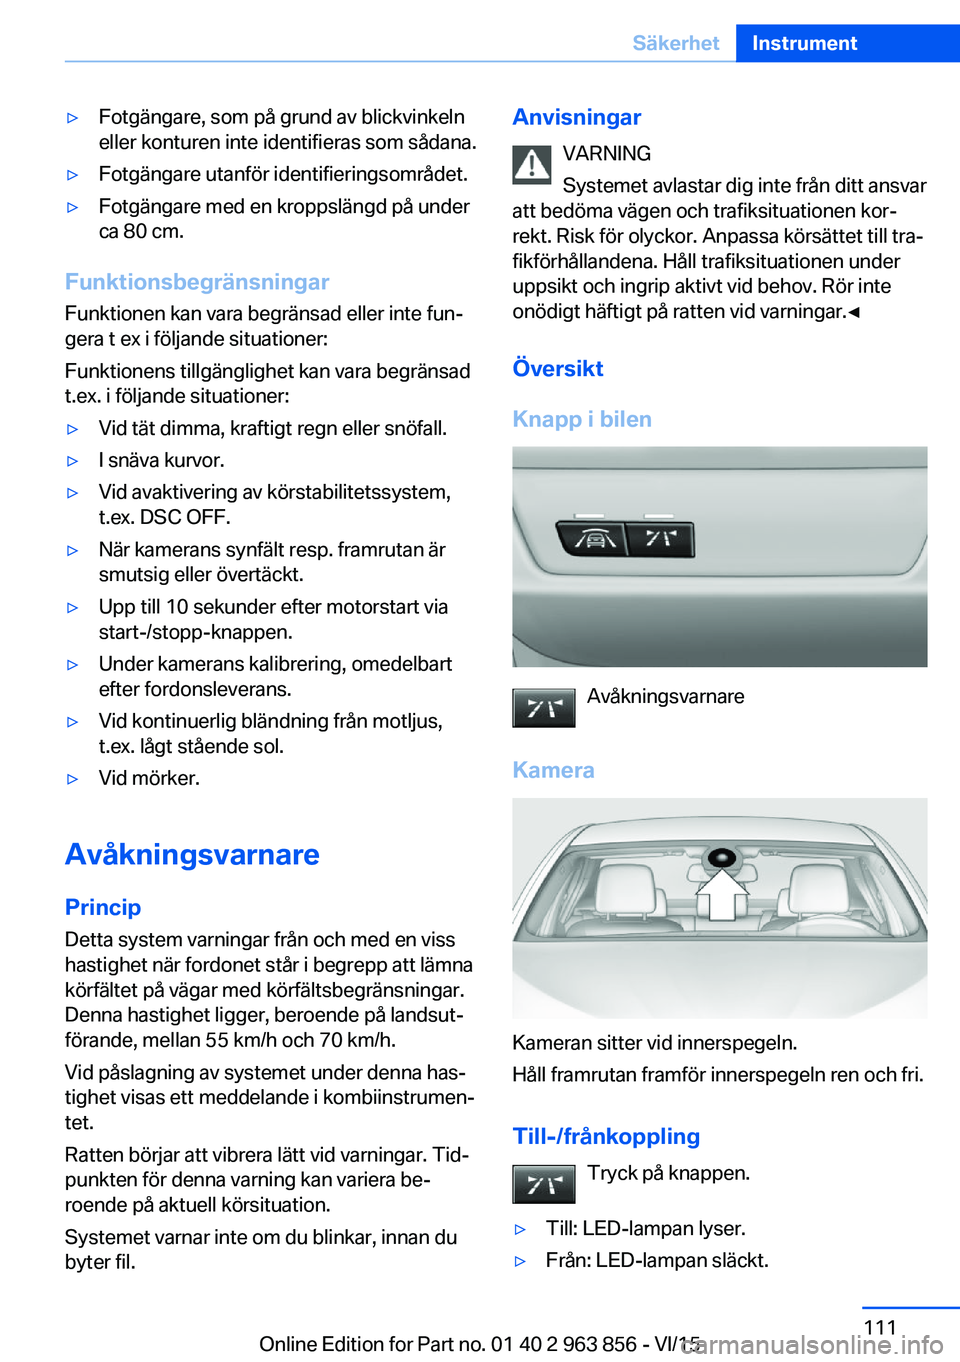 BMW 2 SERIES COUPE 2016  InstruktionsbÖcker (in Swedish) ▷Fotgängare, som på grund av blickvinkeln
eller konturen inte identifieras som sådana.▷Fotgängare utanför identifieringsområdet.▷Fotgängare med en kroppslängd på under
ca 80 cm.
Funktio